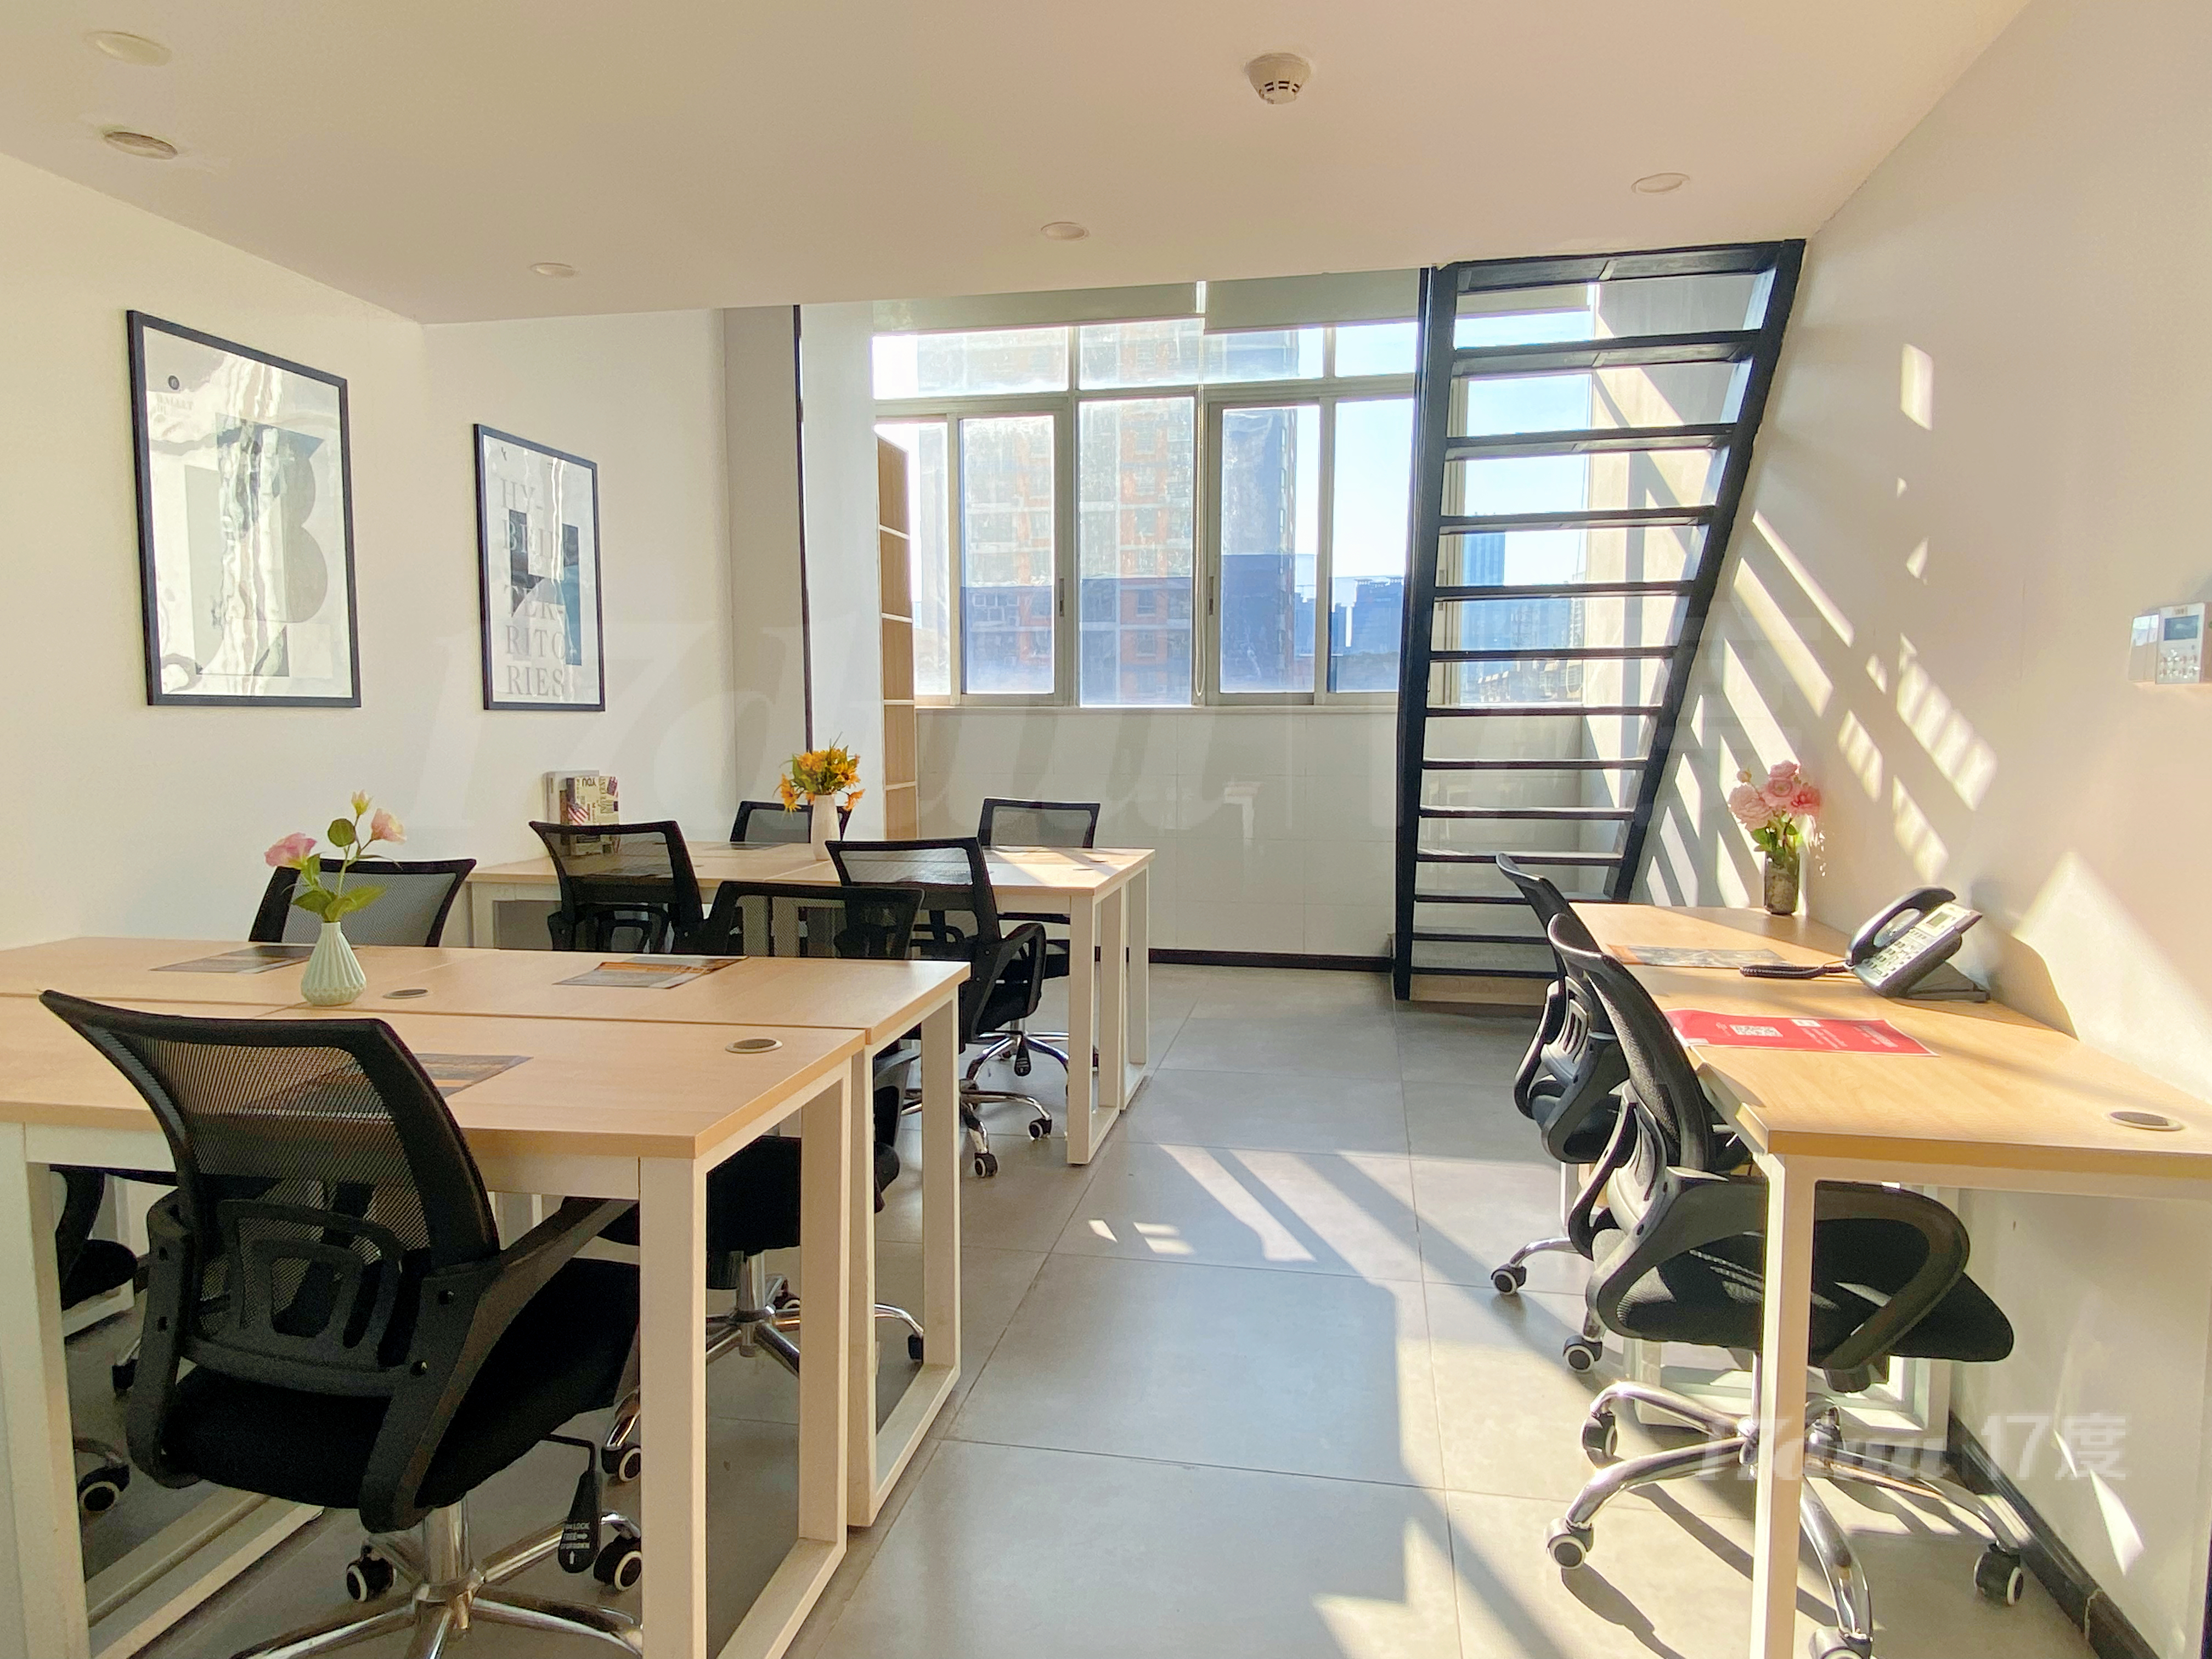 创富港联合办公室以完善的办公设备与优质的办公环境为依托